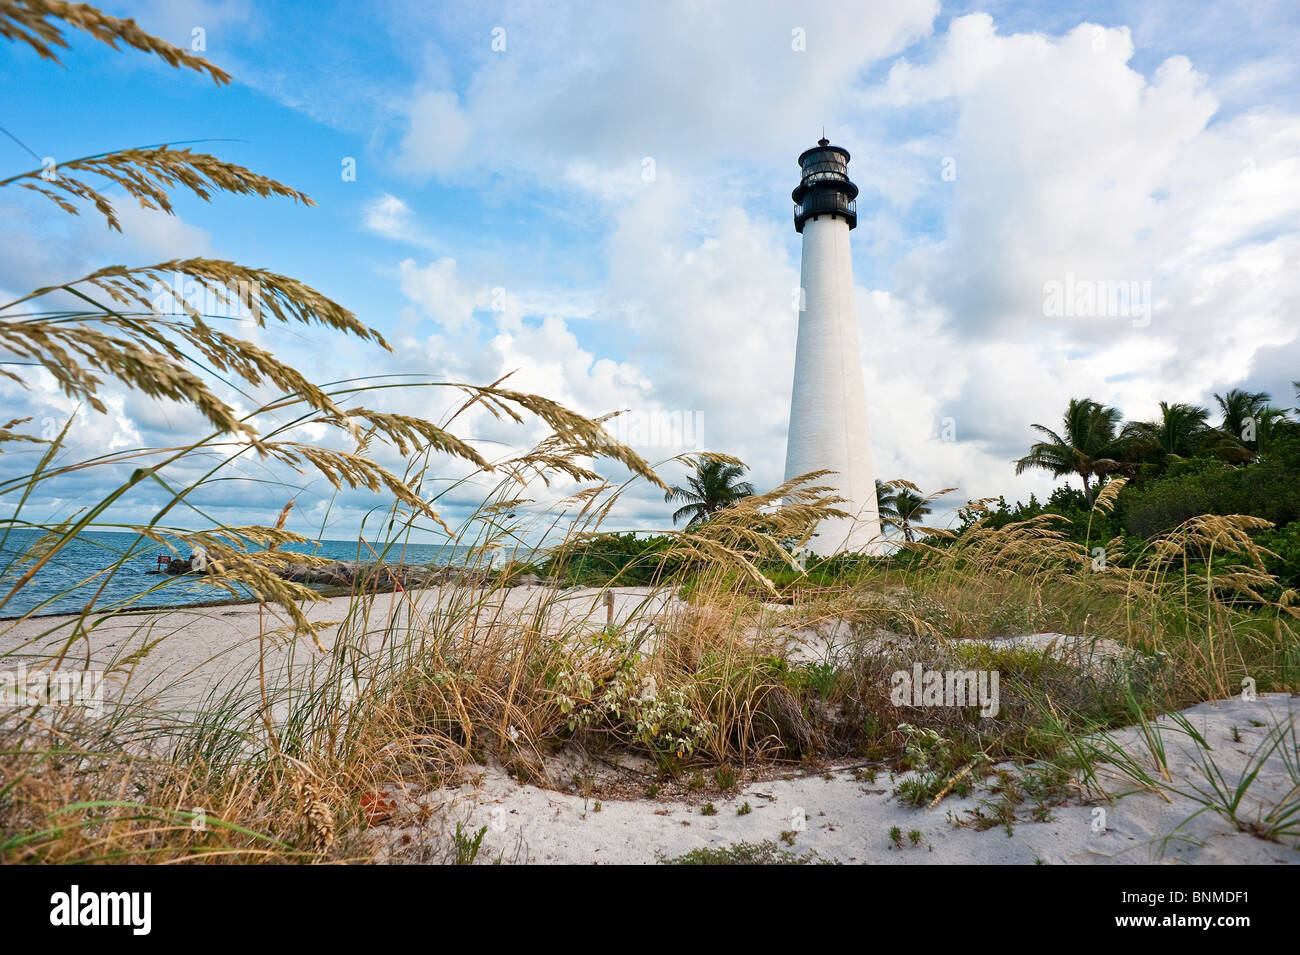 Le phare de Cape Florida situé dans la zone de loisirs Bill Baggs. Key Biscayne, Floride Banque D'Images